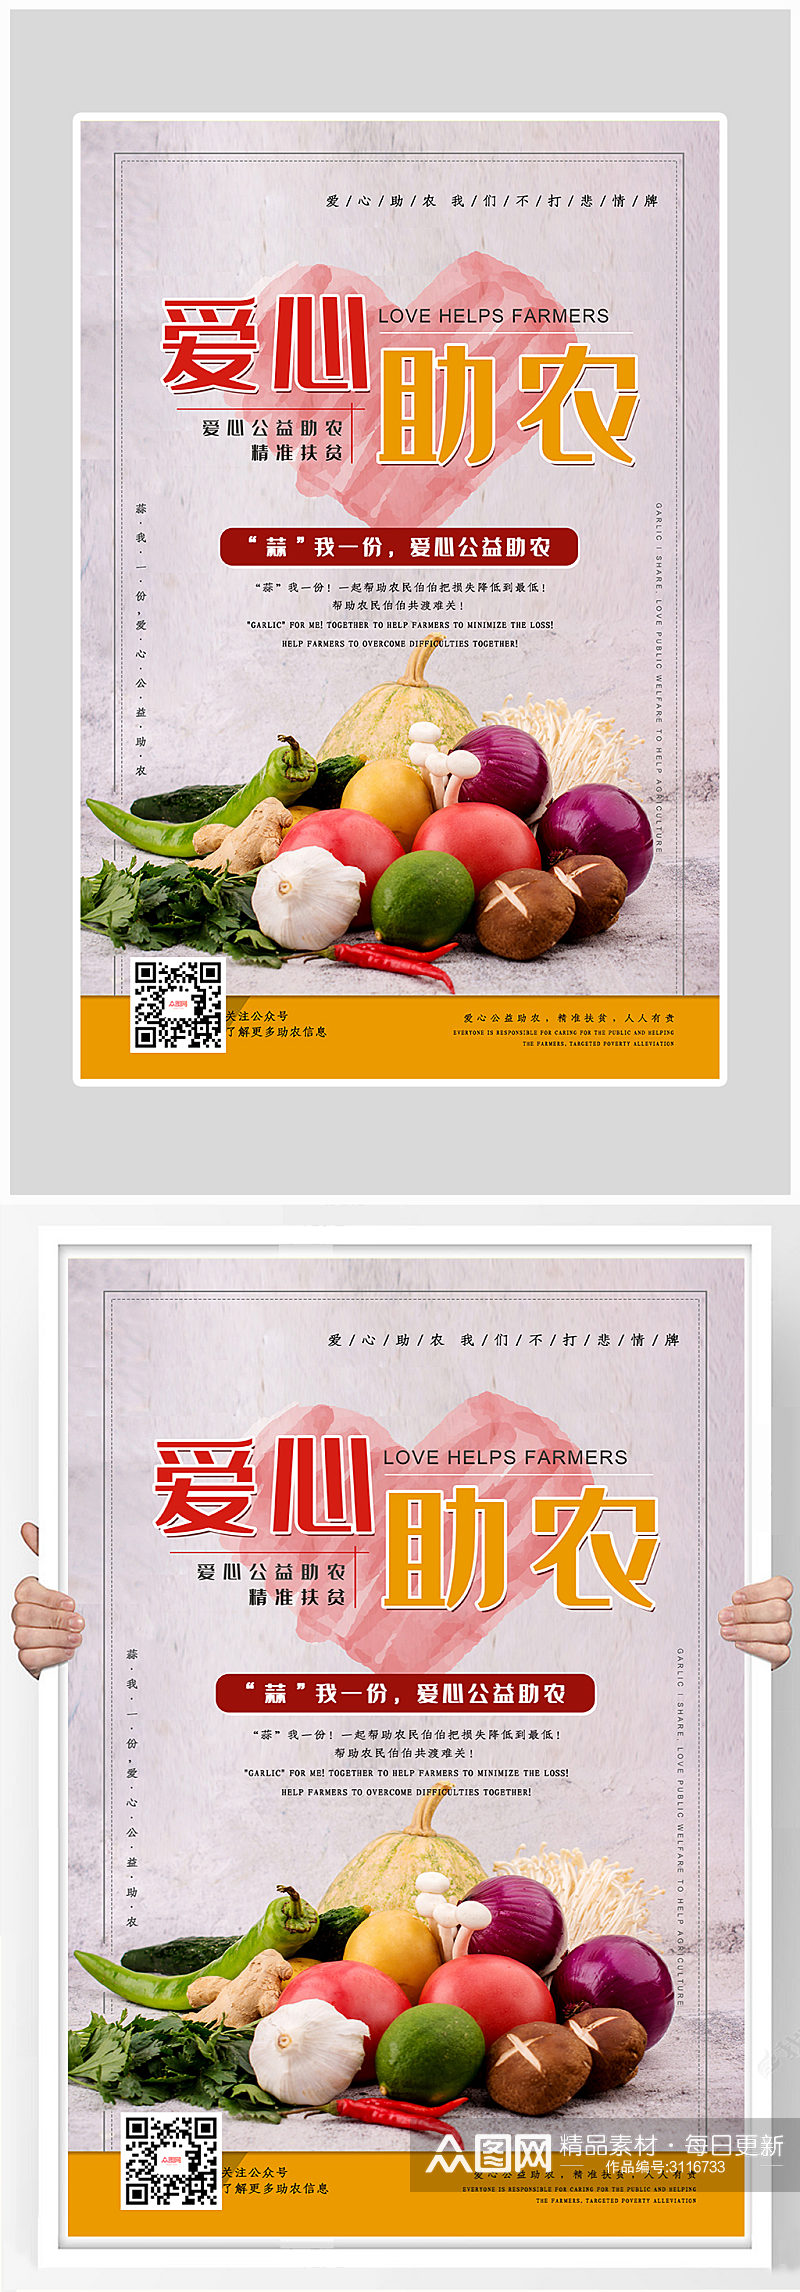 简约爱心助农新鲜蔬菜海报设计素材